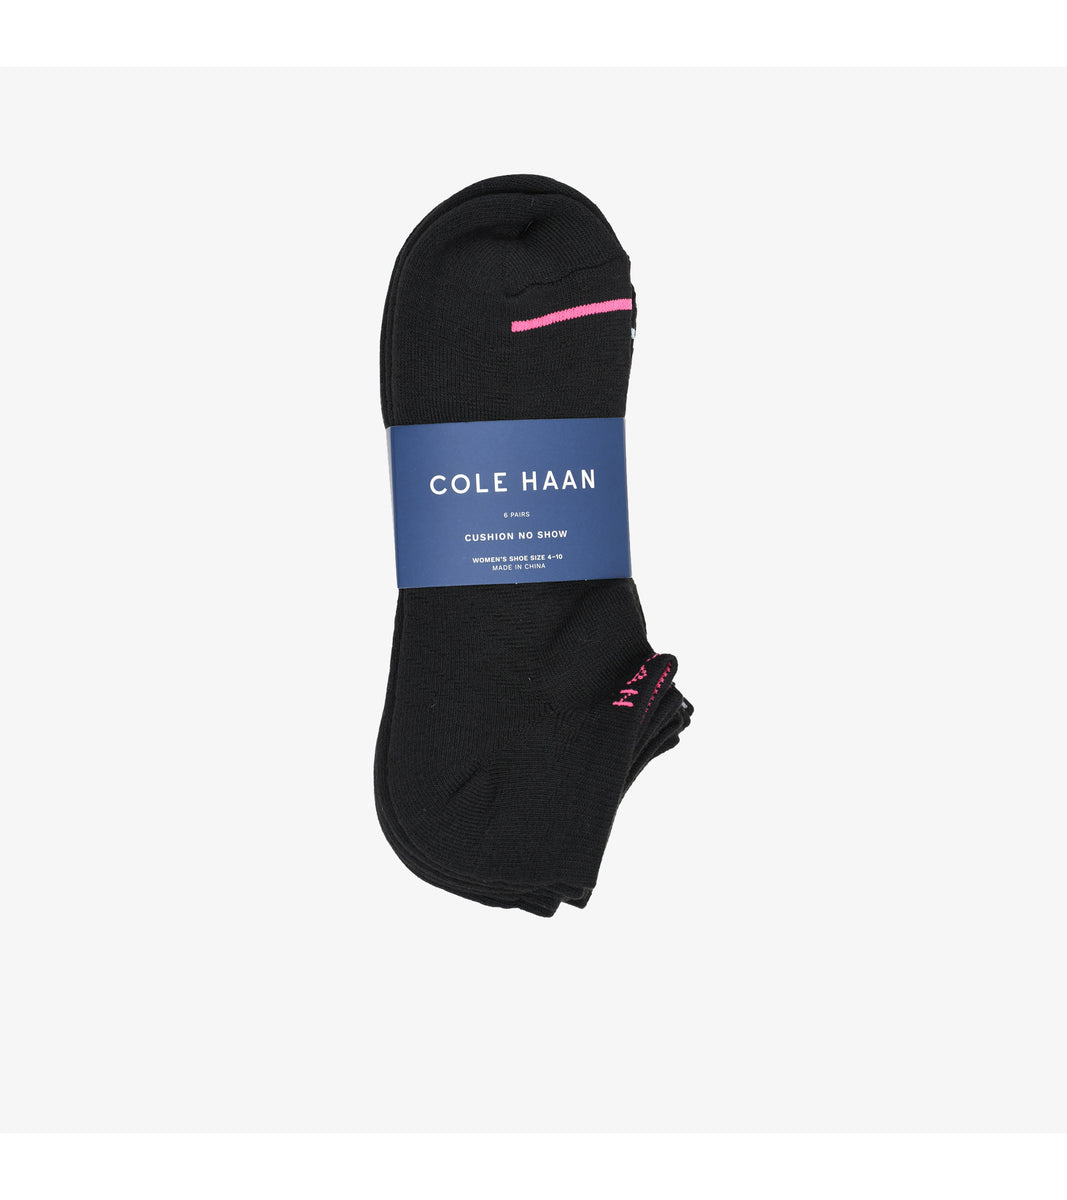 Women's Black Socks